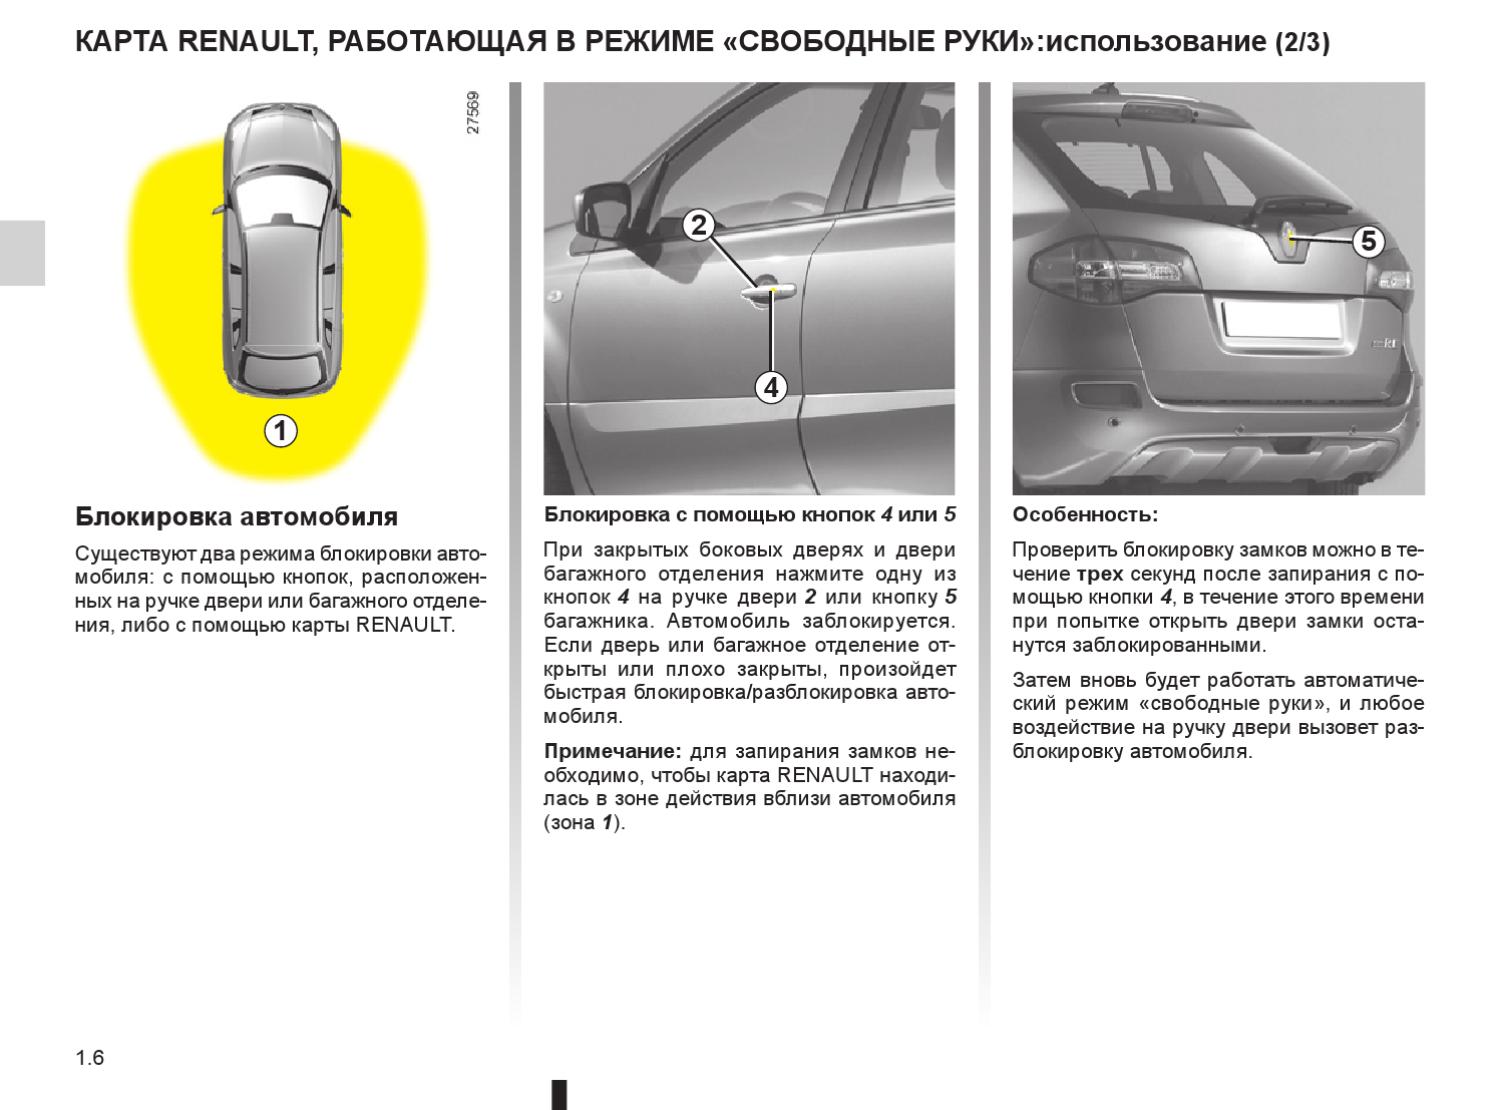 Как закрыть двери Renault Megane III, если вышел из строя концевик двери